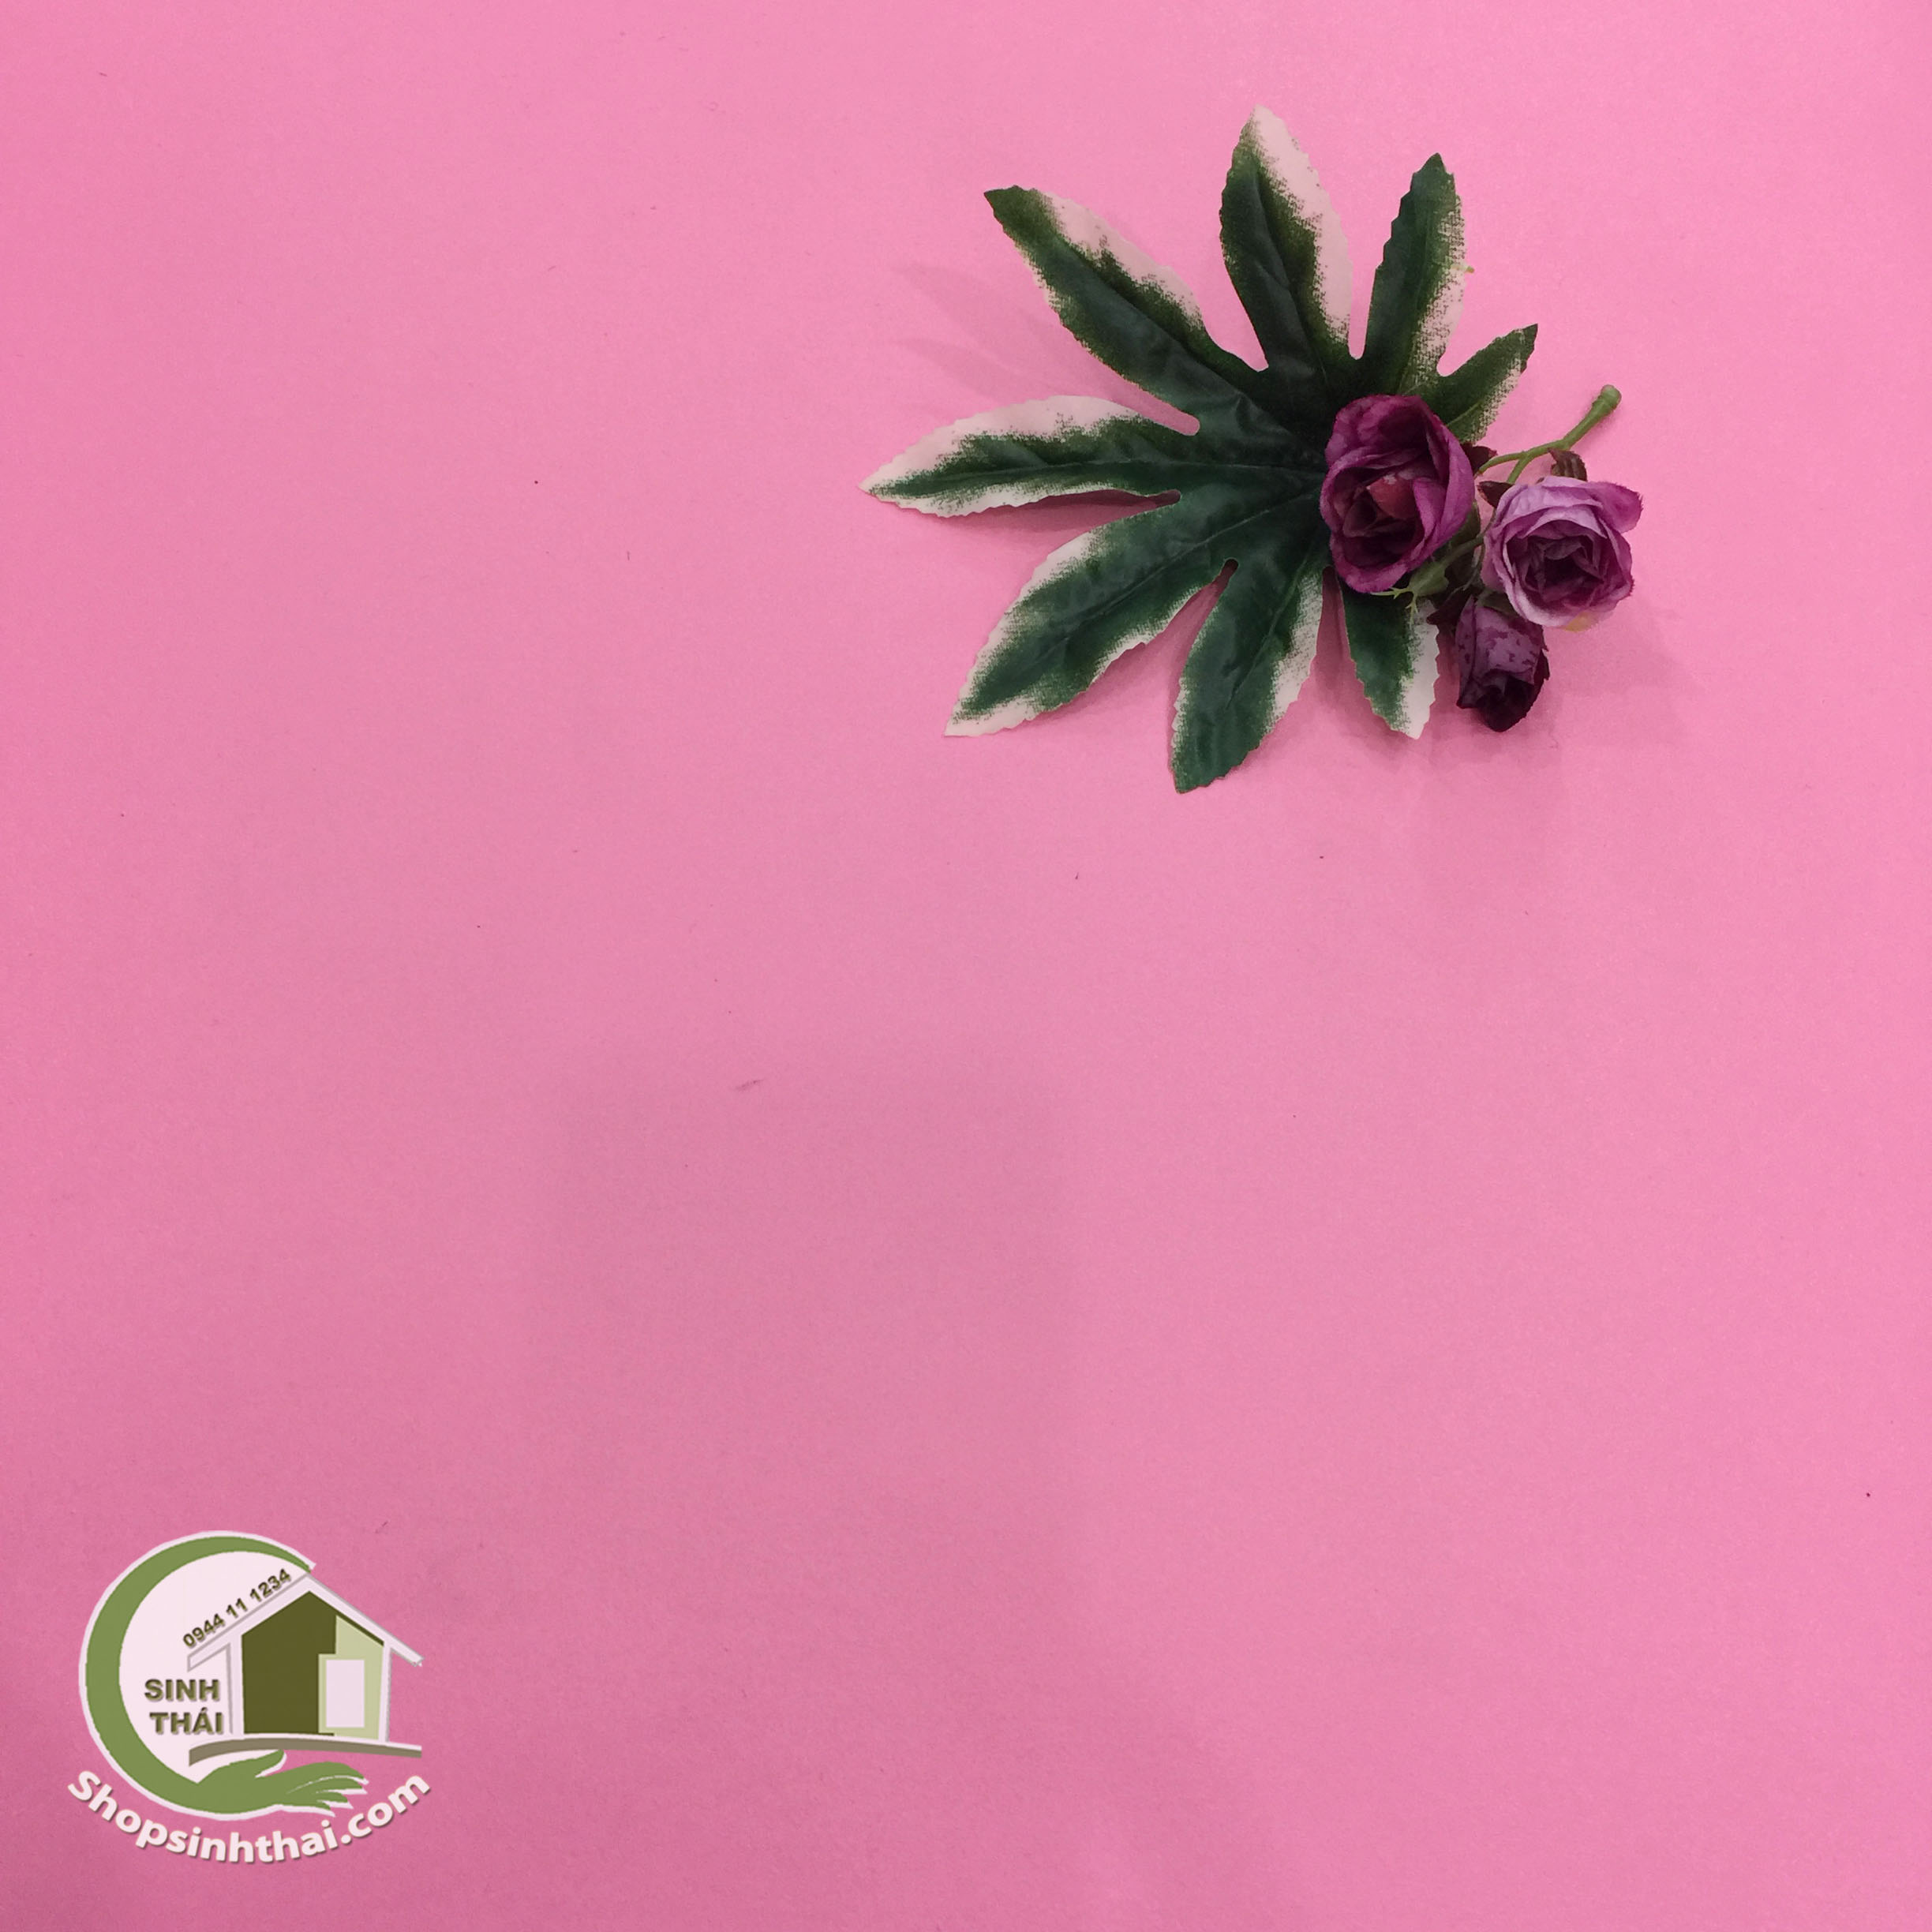 Phông nền giấy màu hồng nhám sẽ khiến cho không gian của bạn trở nên đẹp đến ngỡ ngàng. Hãy xem hình ảnh sử dụng phông nền giấy màu hồng nhám để có được cảm giác bình yên và nhẹ nhàng khi thư giãn tại nhà.